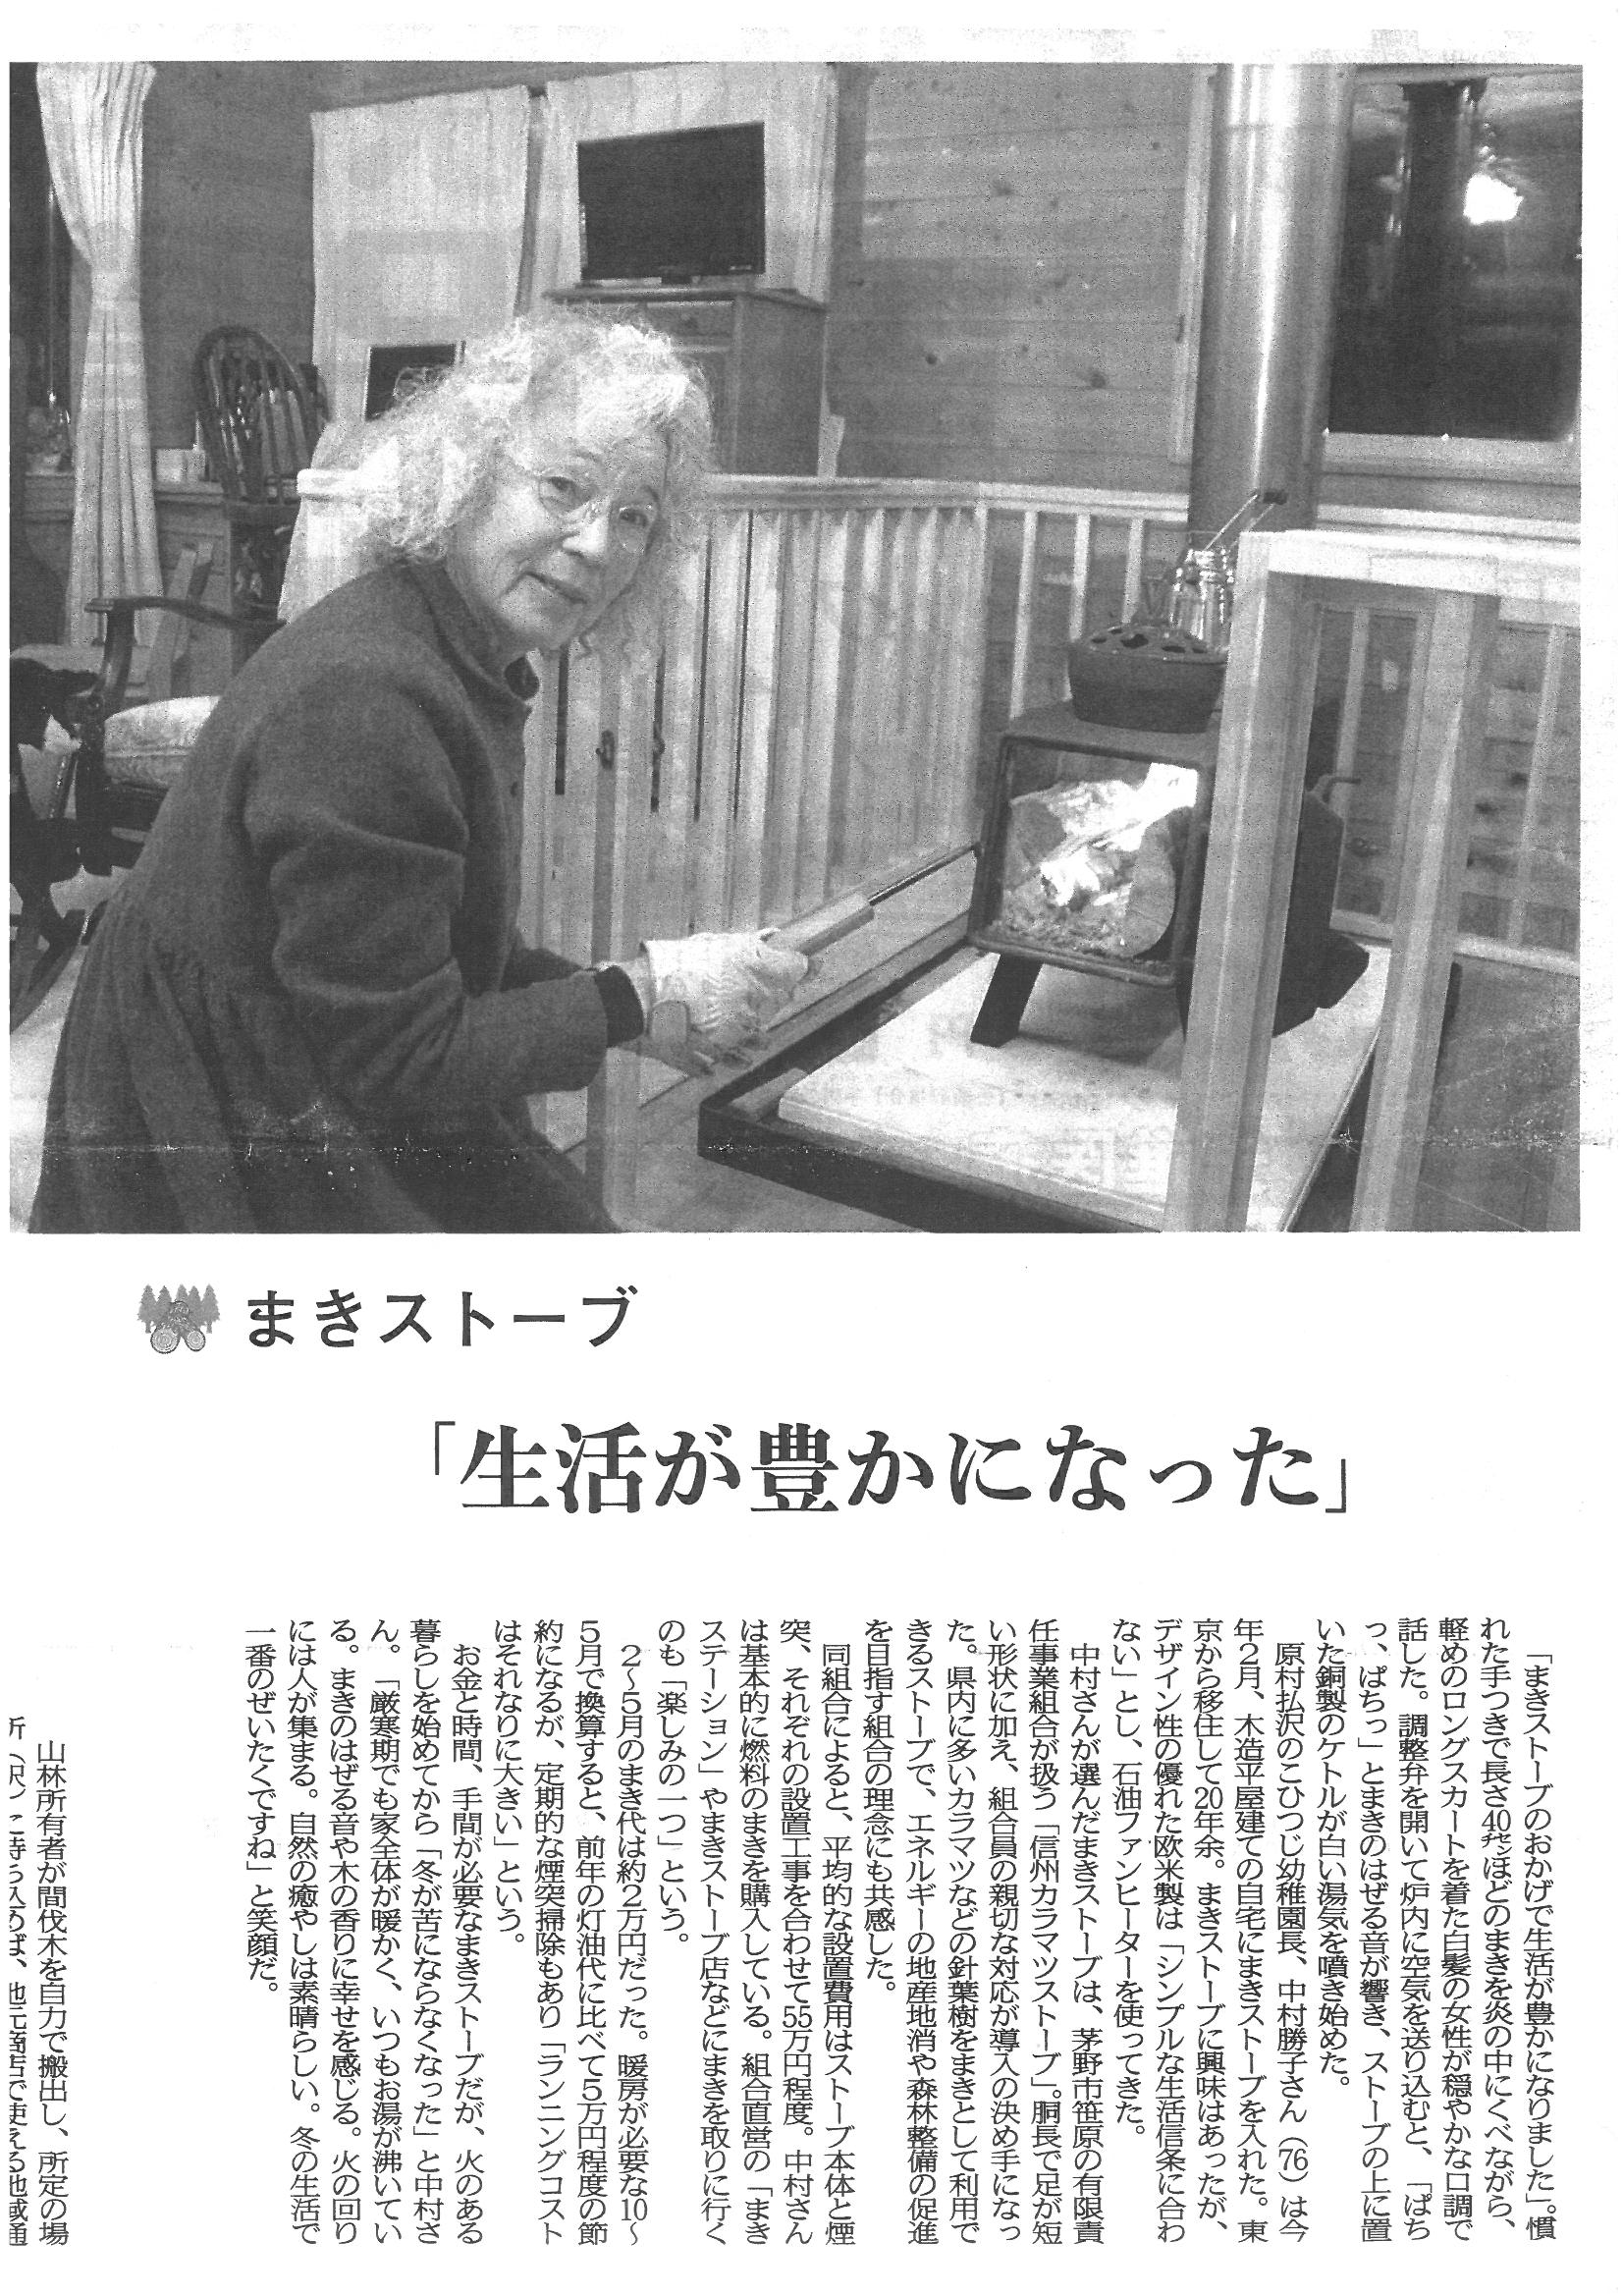 http://karamatsu-stove.jp/topics/images/kara.jpg